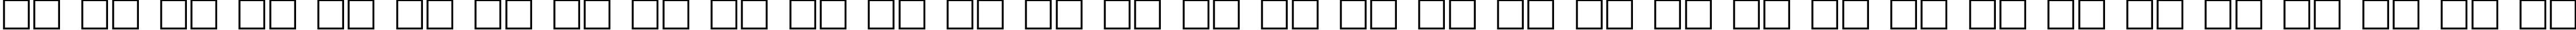 Пример написания русского алфавита шрифтом EpsilonCTT